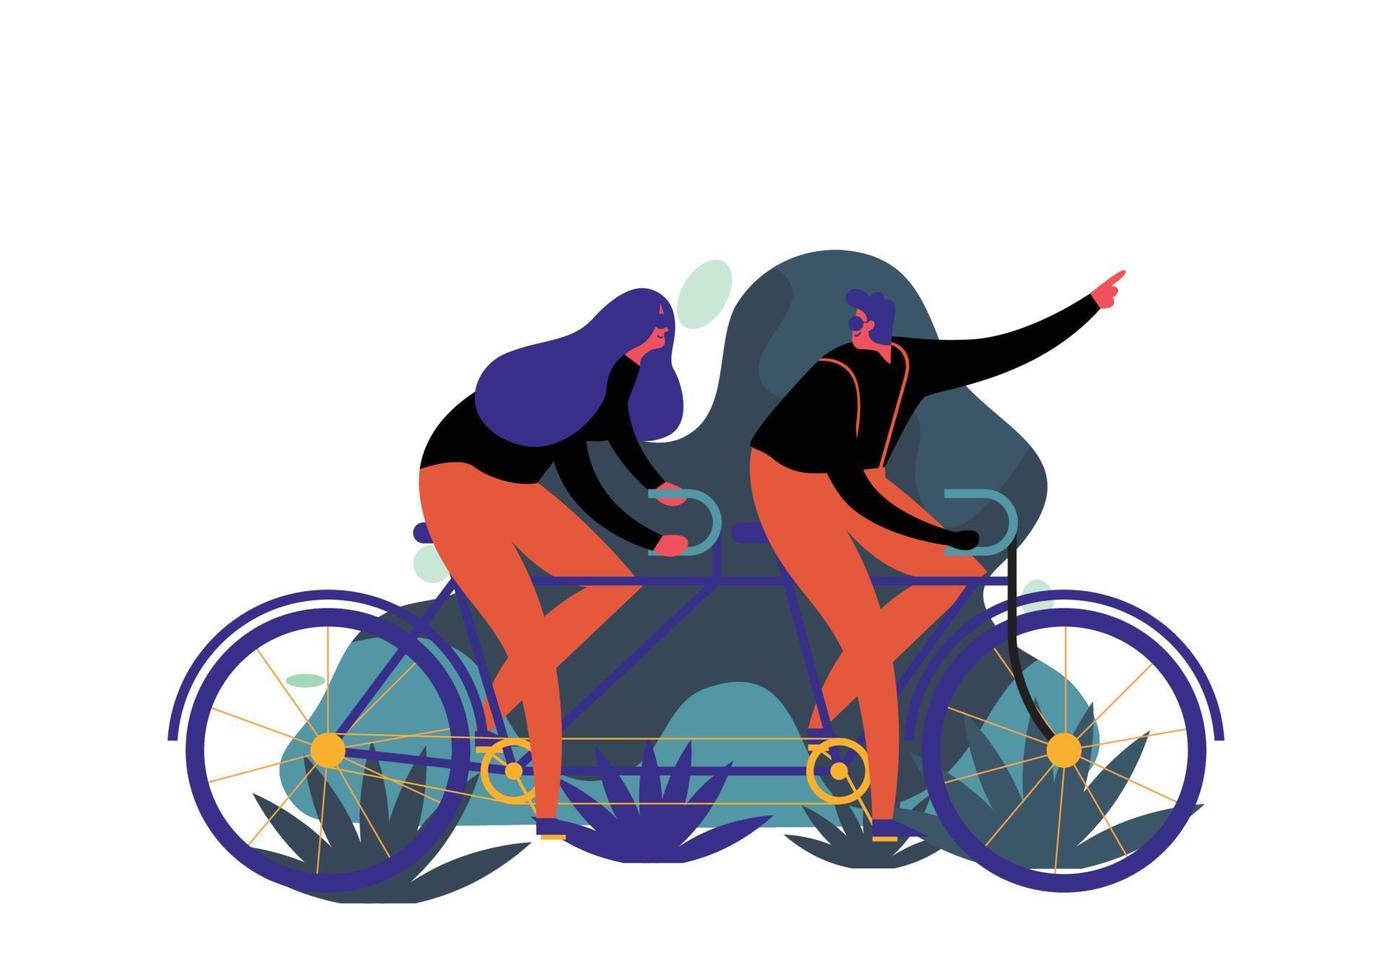 iconos de estilo de vida personas montando en bicicleta vector